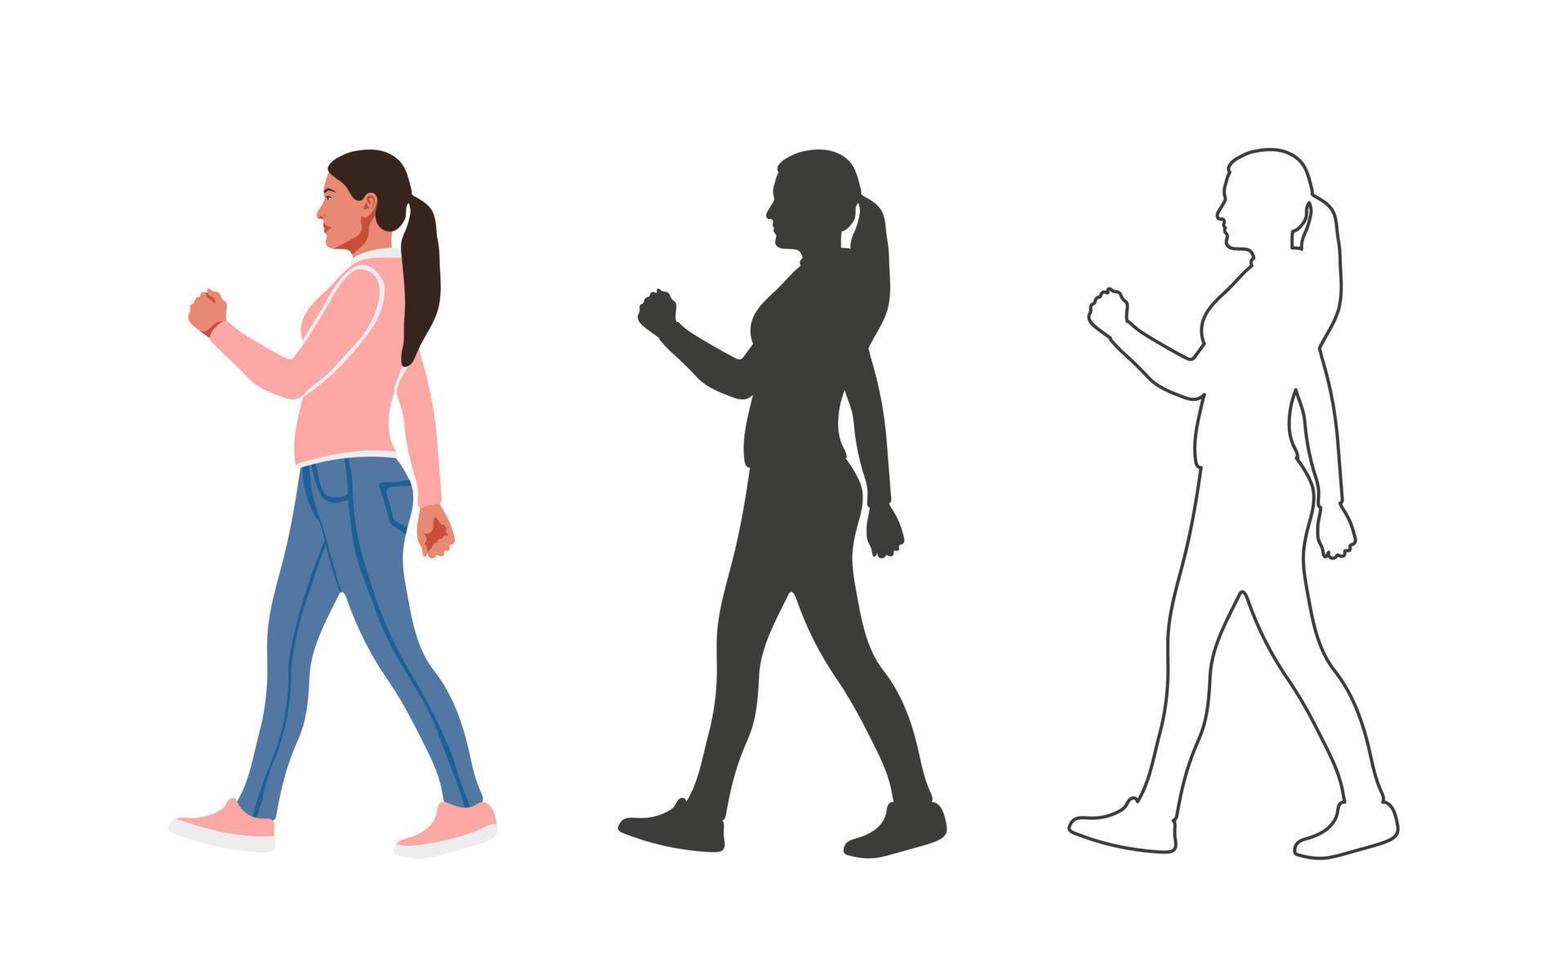 personas. chica caminando personas dibujadas en un estilo de dibujos animados planos. ilustración vectorial vector